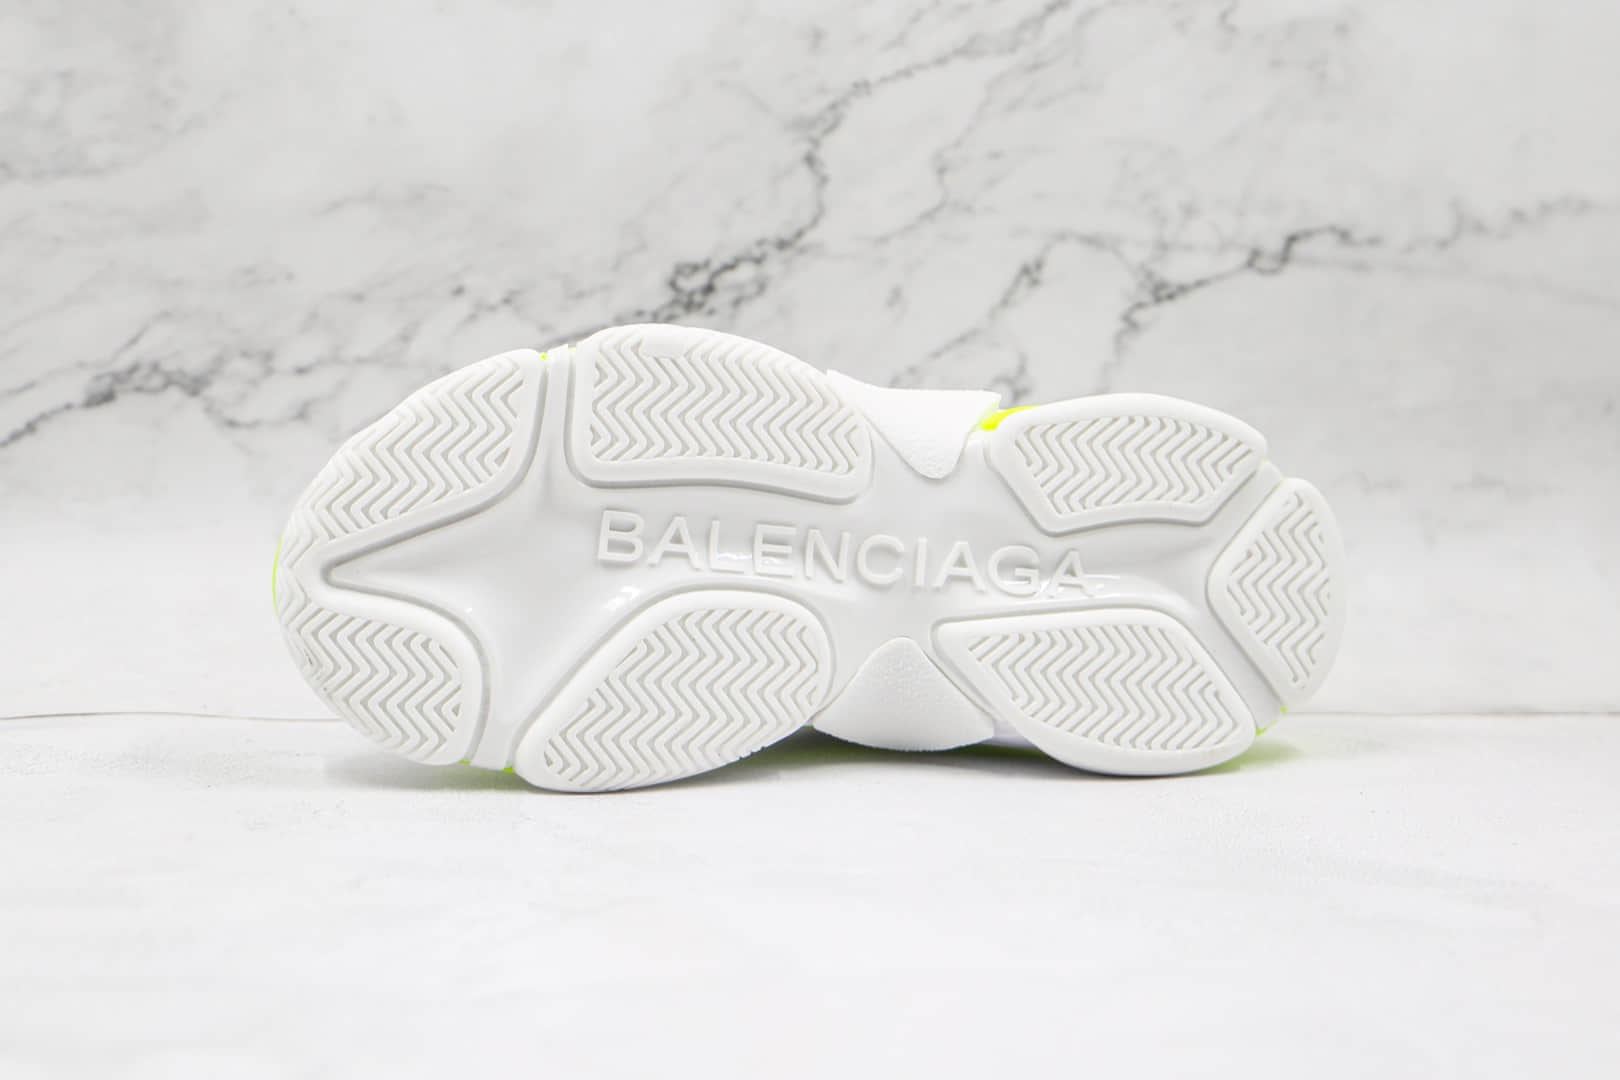 巴黎世家Balenciaga纯原版本初代1.0白绿色老爹鞋原盒配件齐全原档案数据开发